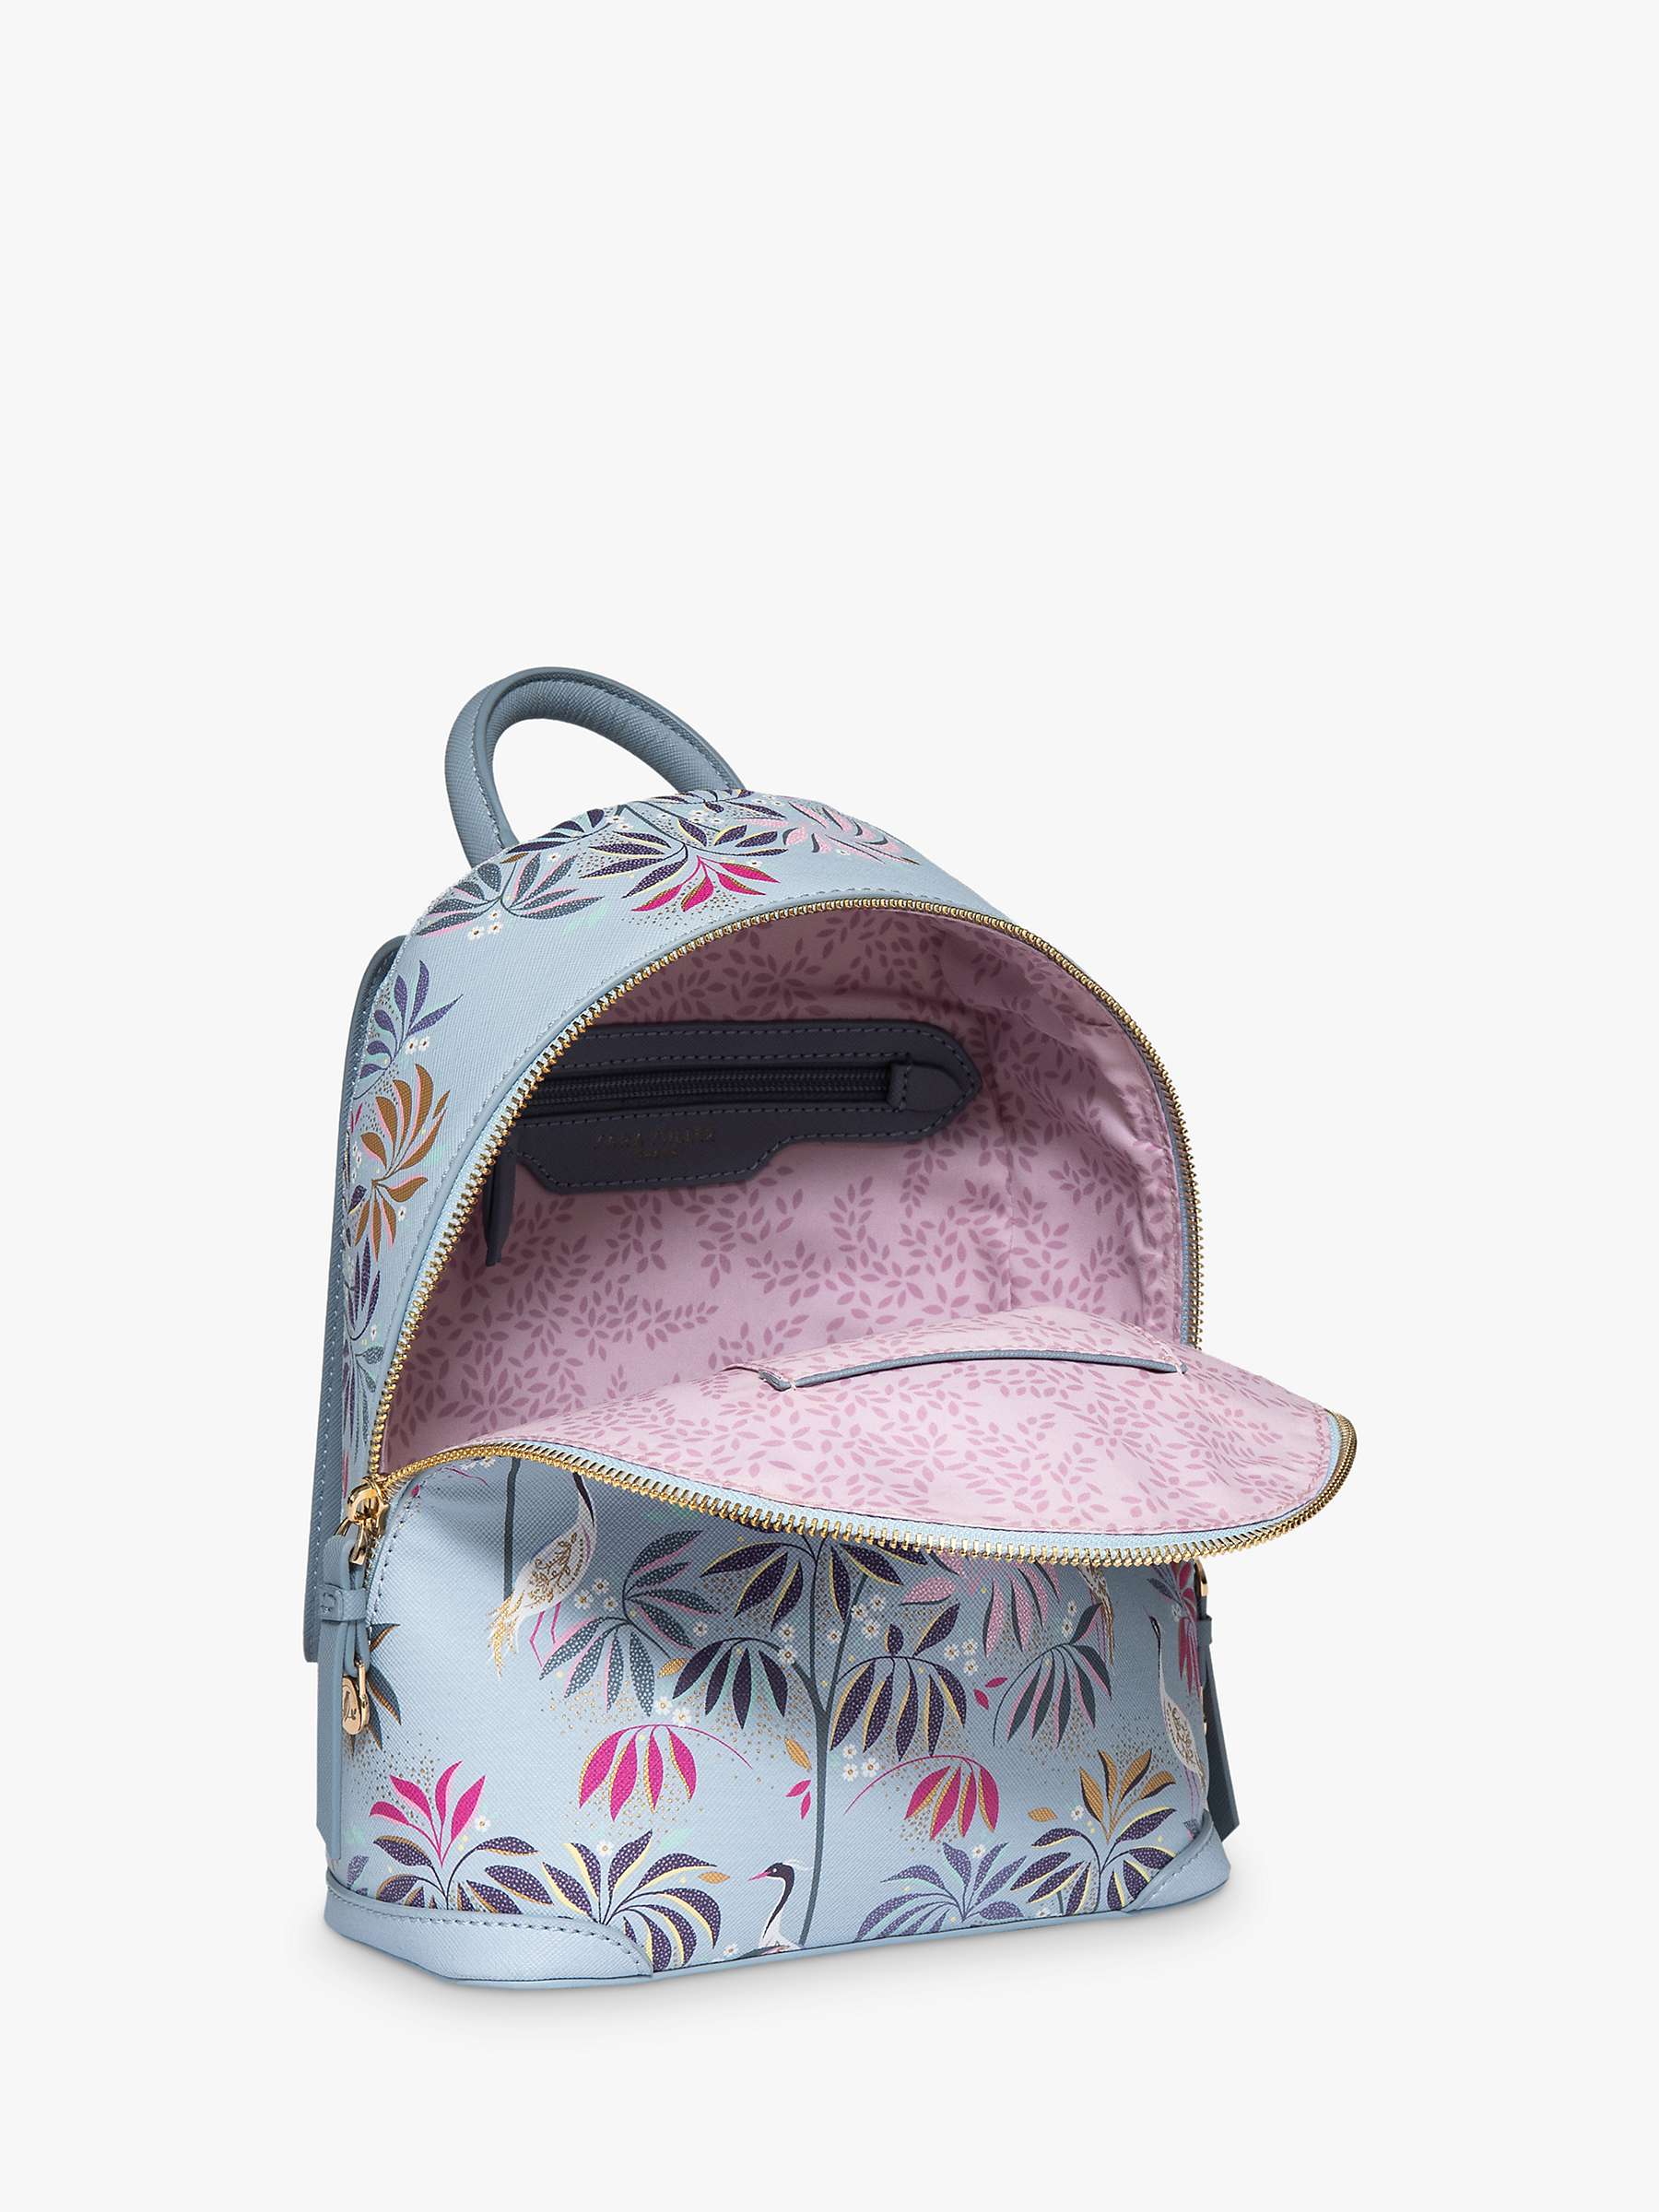 Buy Sara Miller Mini Crane Backpack, Pale Blue Online at johnlewis.com